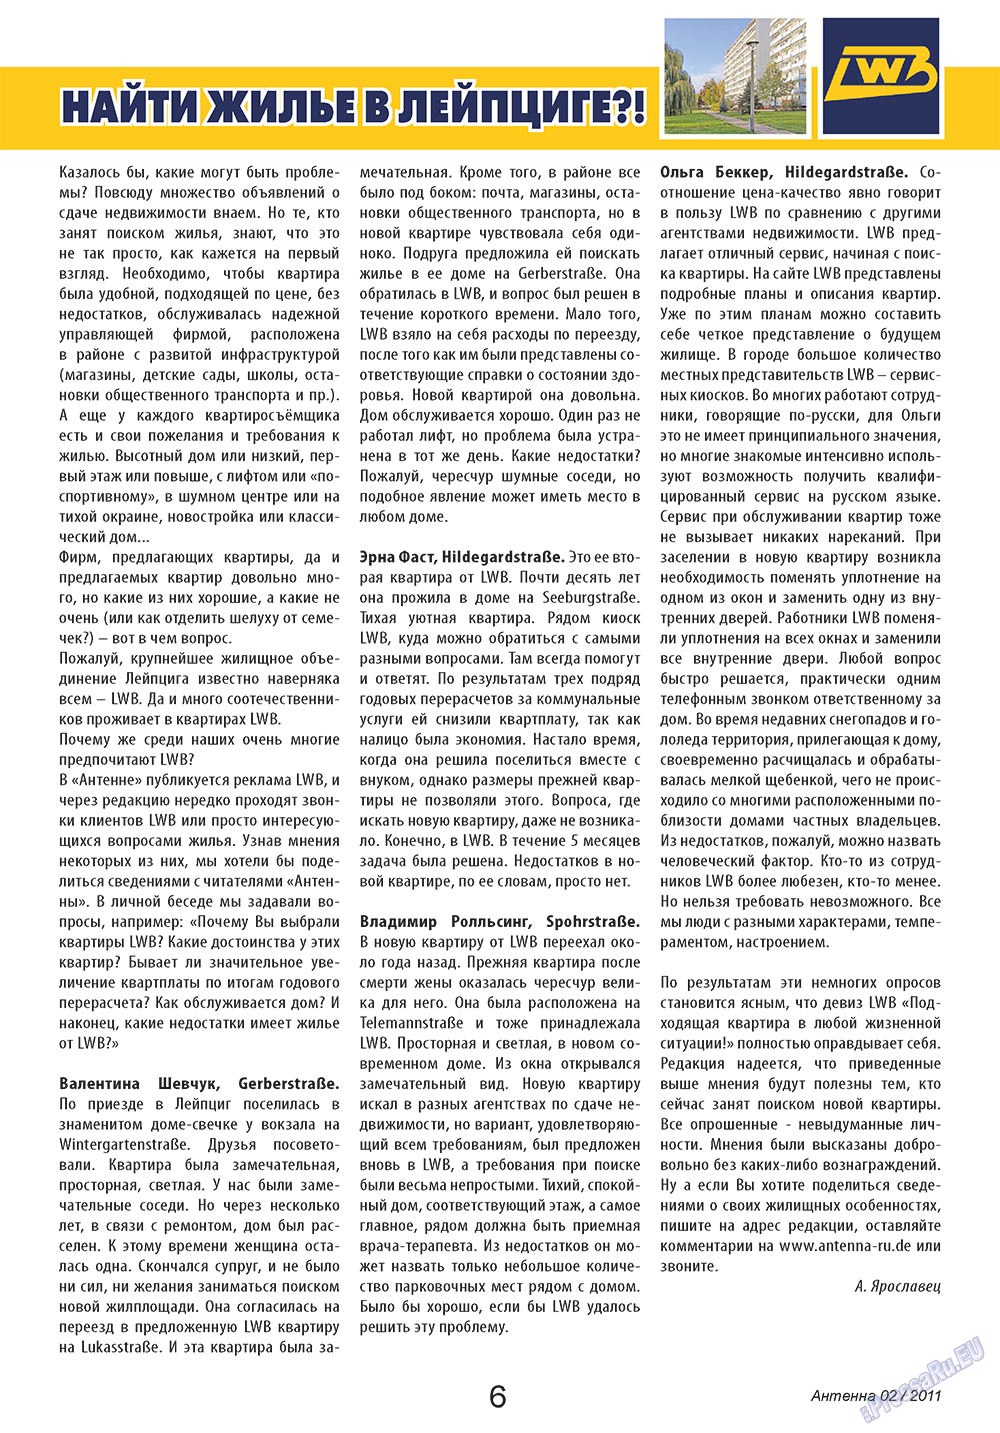 Антенна, журнал. 2011 №2 стр.6